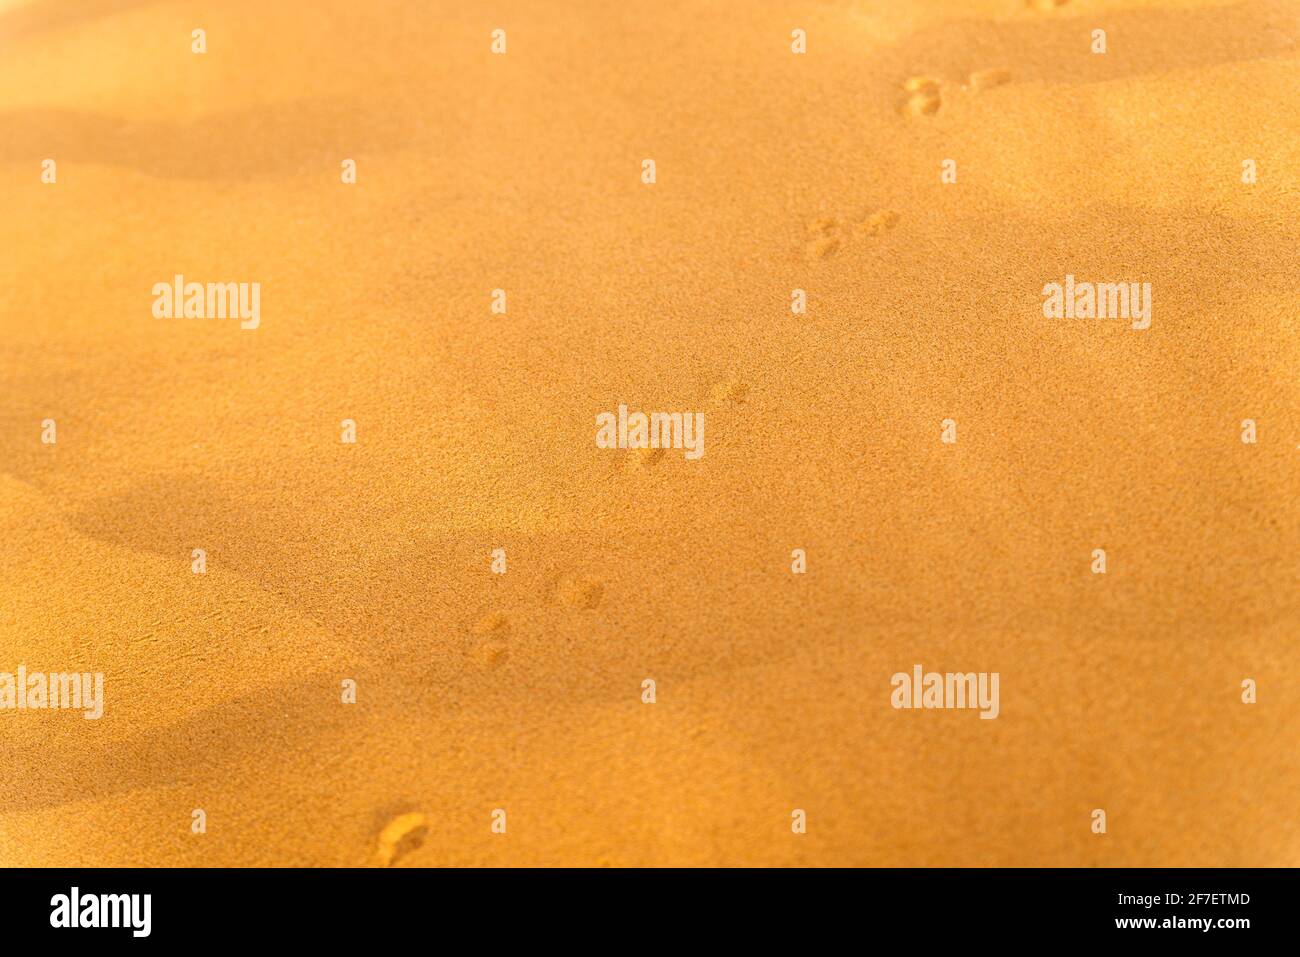 Motif de sable doré sur une plage en été avec chaîne de pistes. La surface texturée de sable sur la plage après un fort vent sous forme de wav Banque D'Images